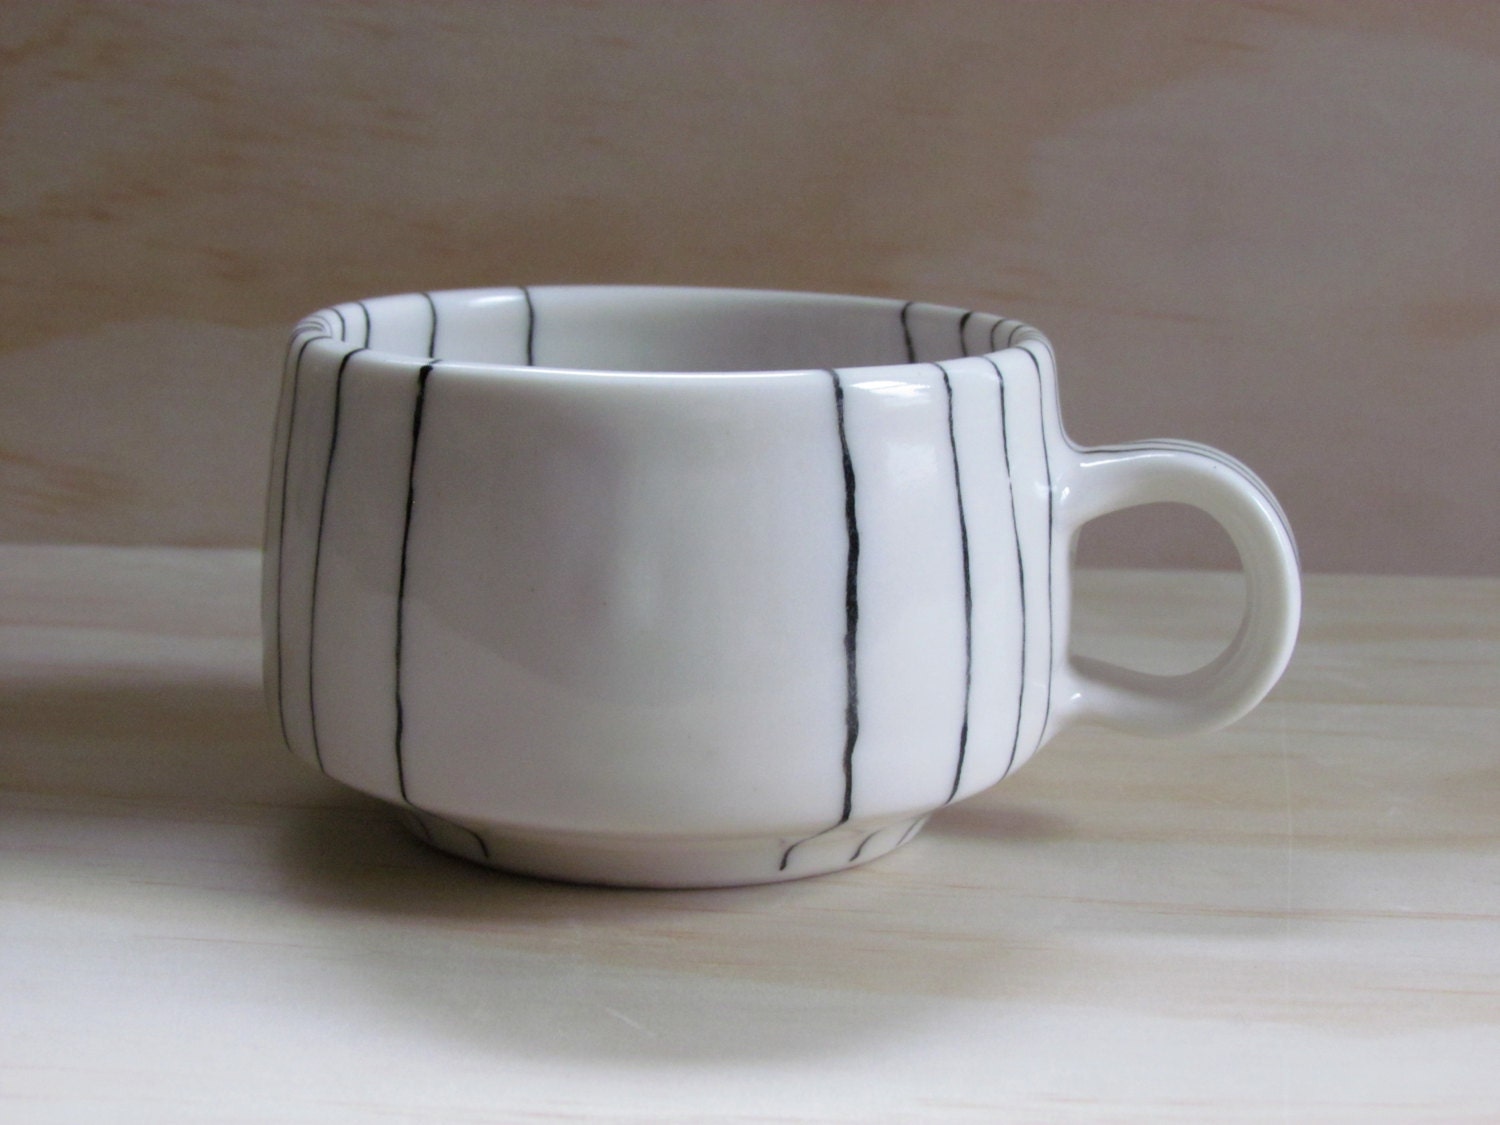 Black and White Line Tea or Coffee Mug. Graphic design. Modern ceramic porcelain mug.